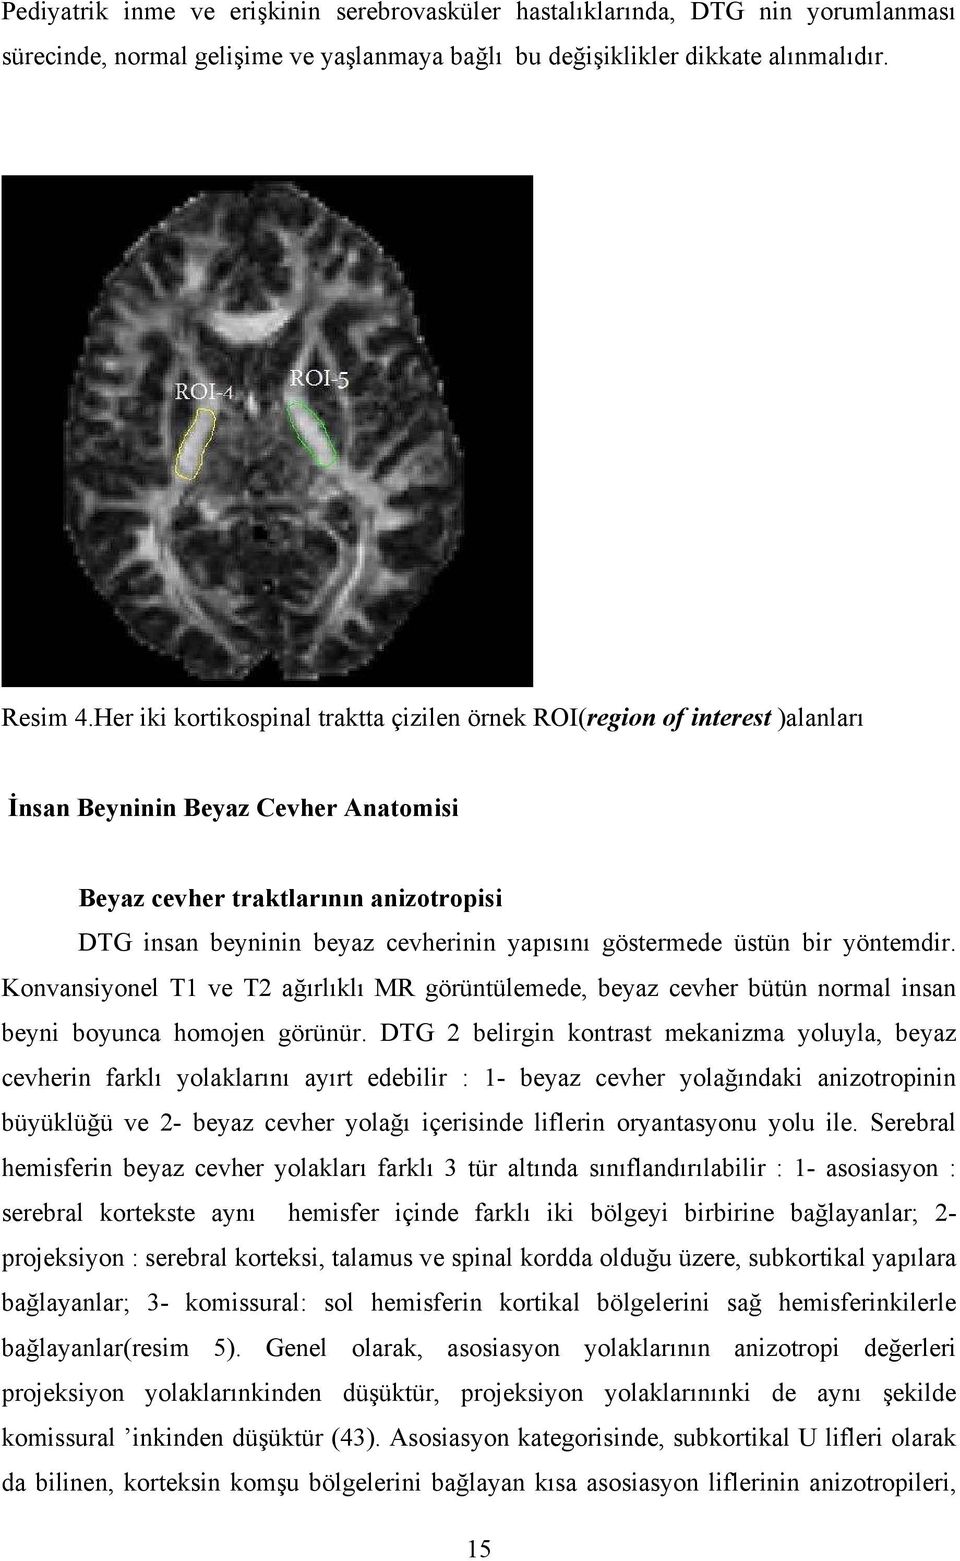 göstermede üstün bir yöntemdir. Konvansiyonel T1 ve T2 ağırlıklı MR görüntülemede, beyaz cevher bütün normal insan beyni boyunca homojen görünür.